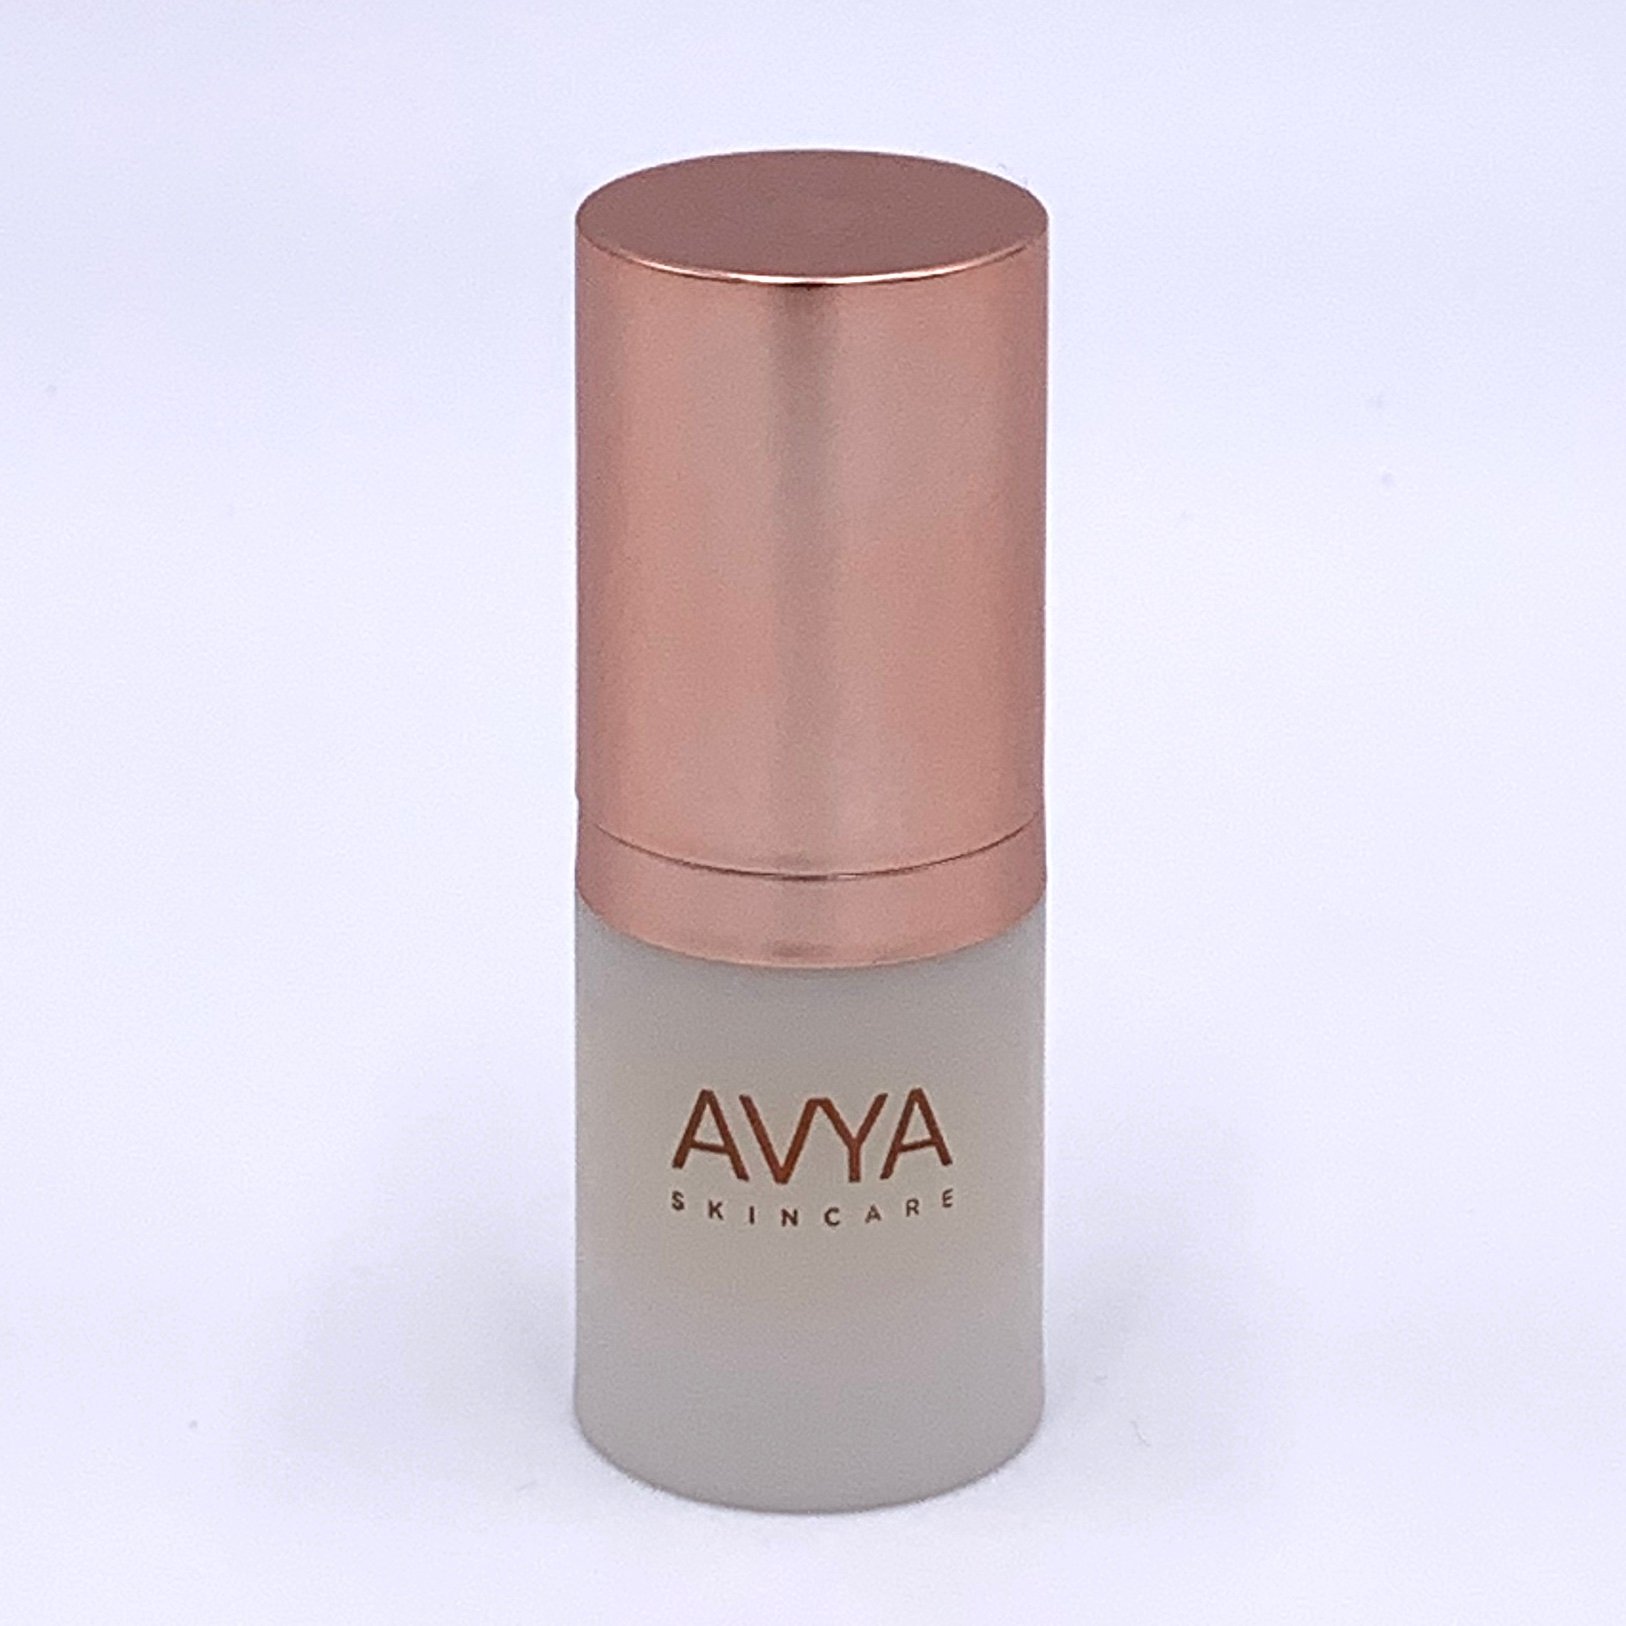 Avya Skincare Anti-Aging Power Serum for Birchbox August 2020